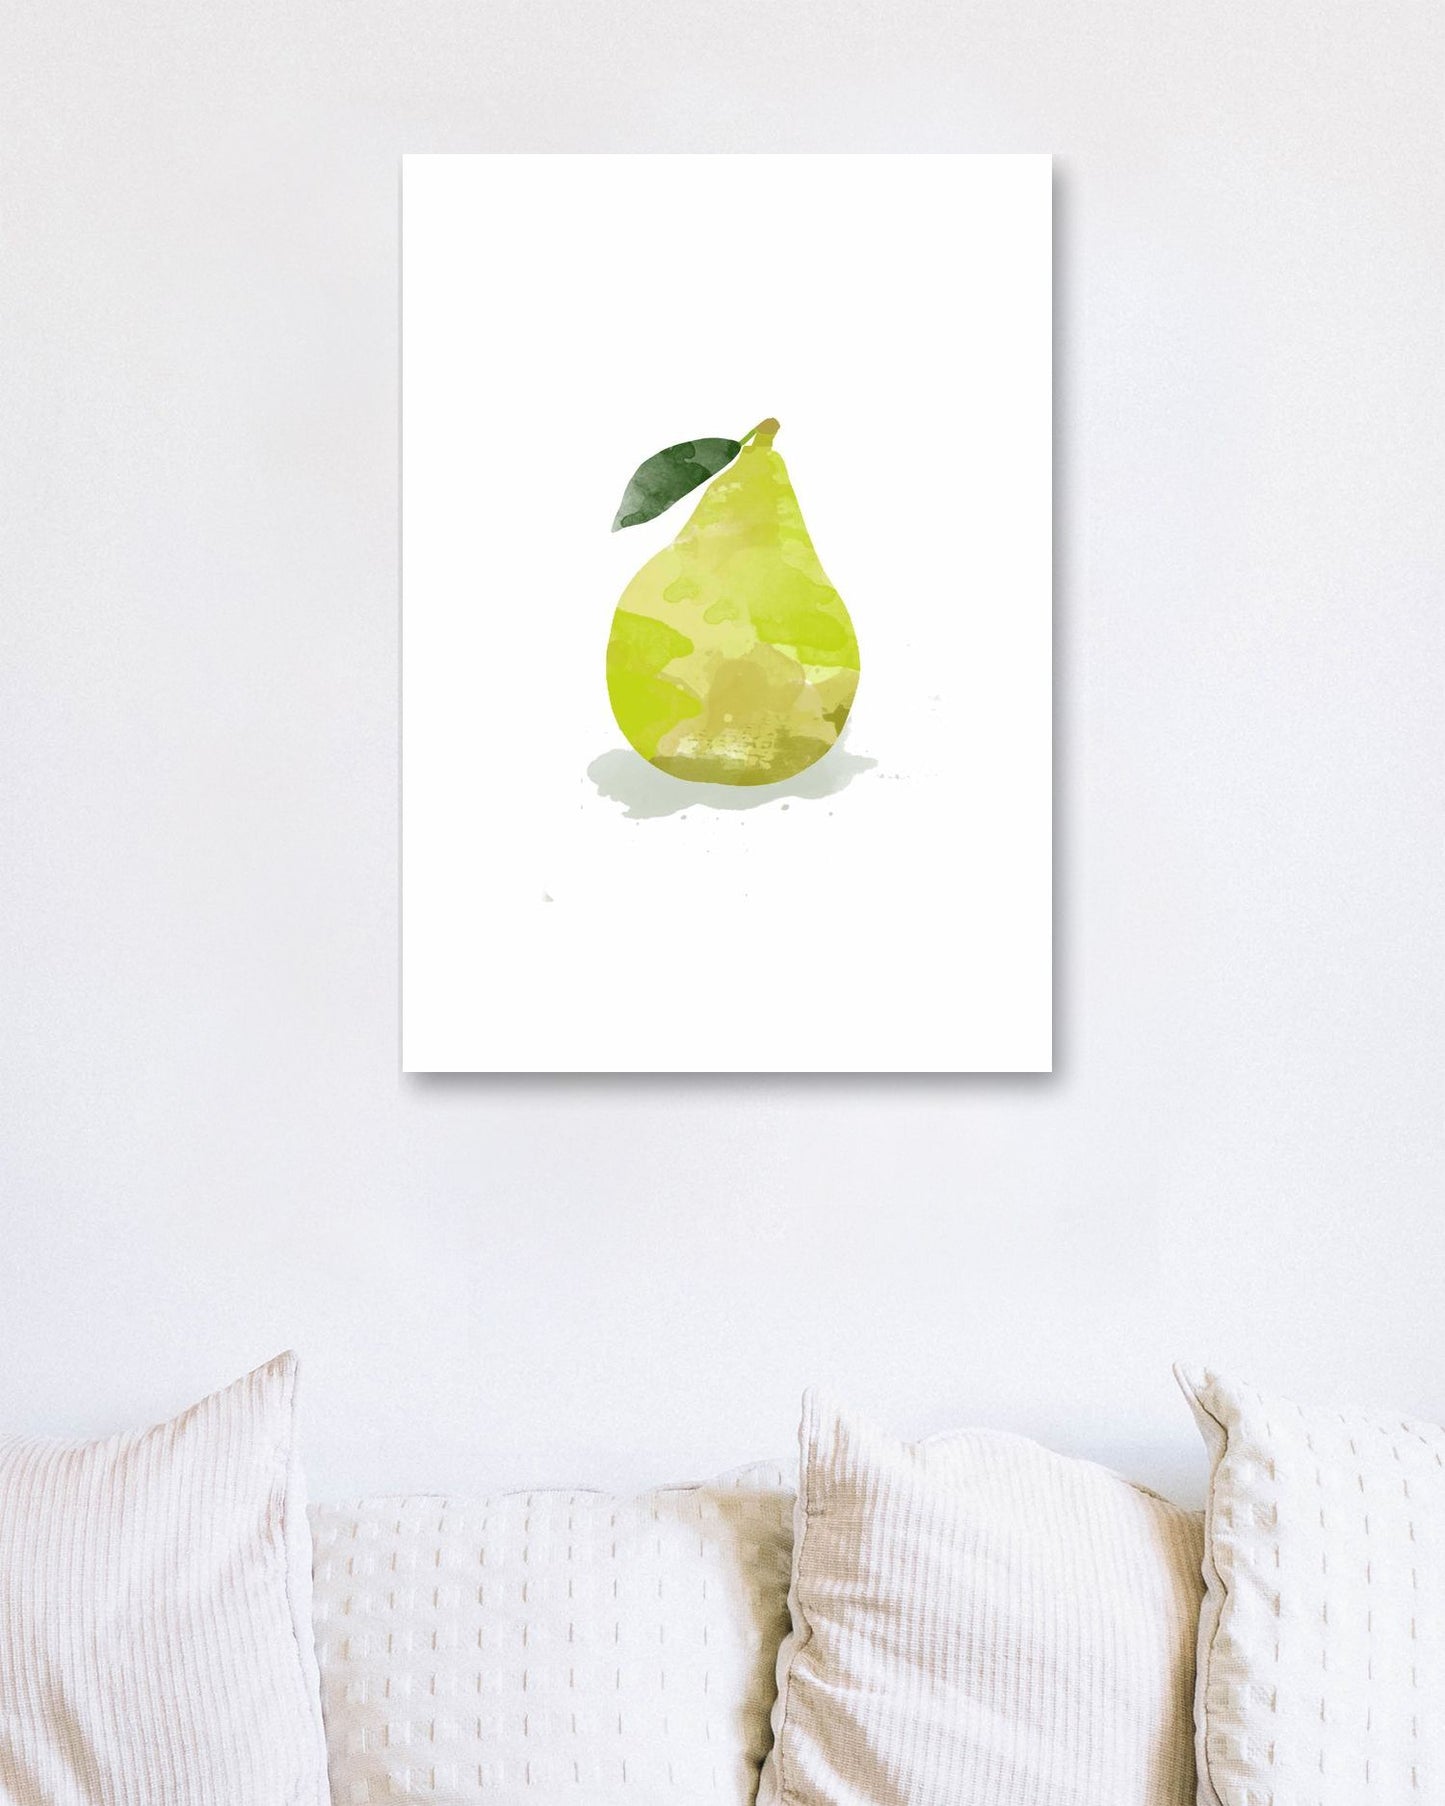 Pear #2 - CatOfLuck - @CatOfLuck